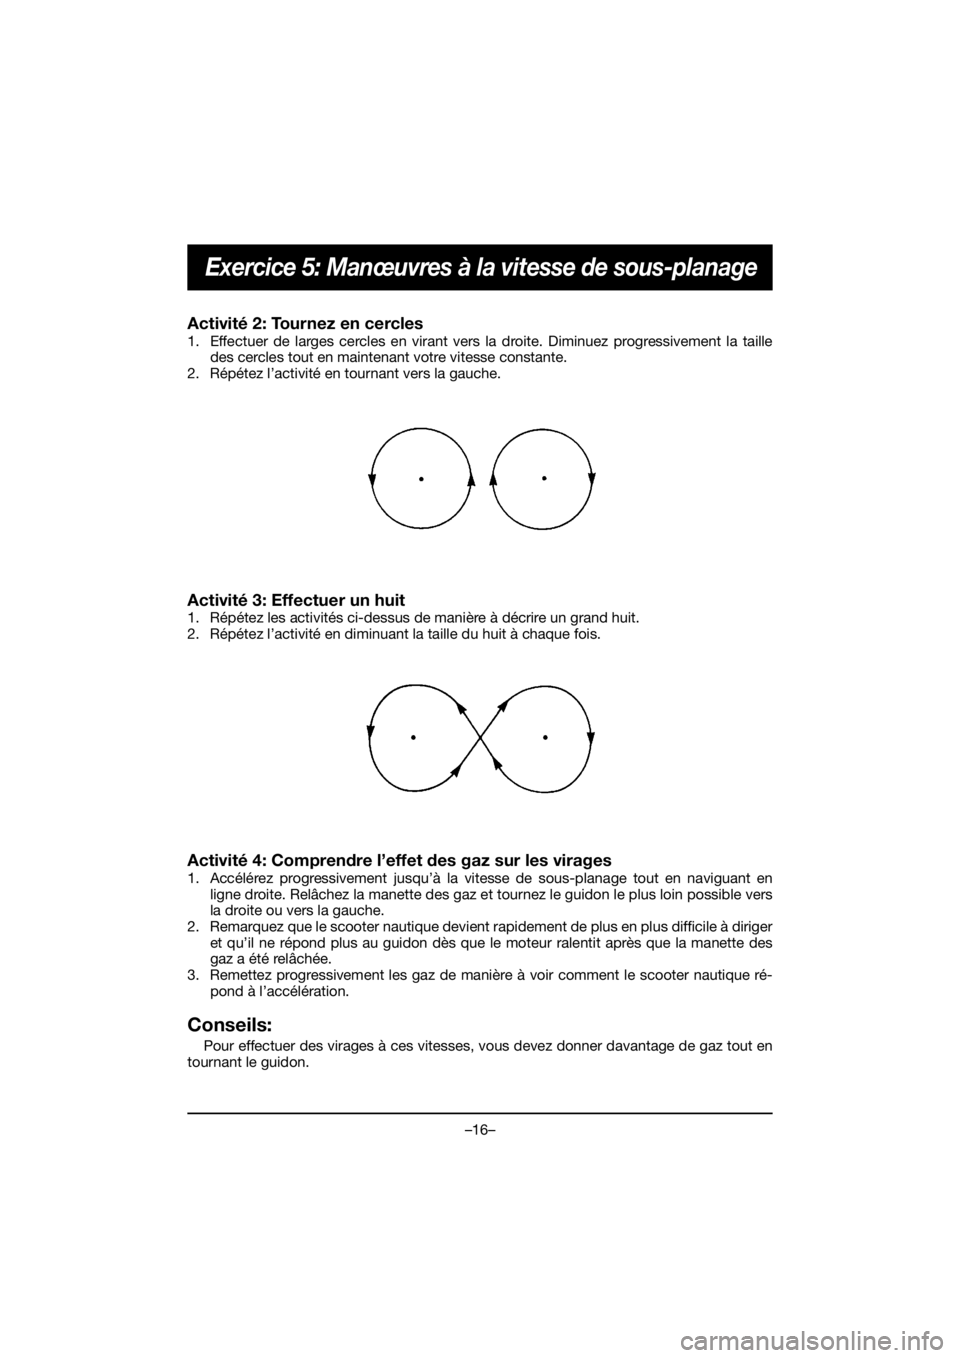 YAMAHA EX SPORT 2020  Notices Demploi (in French) –16–
Exercice 5: Manœuvres à la vitesse de sous-planage
Activité 2: Tournez en cercles 
1. Effectuer de larges cercles en virant vers la droite. Diminuez progressivement la taille
des cercles t